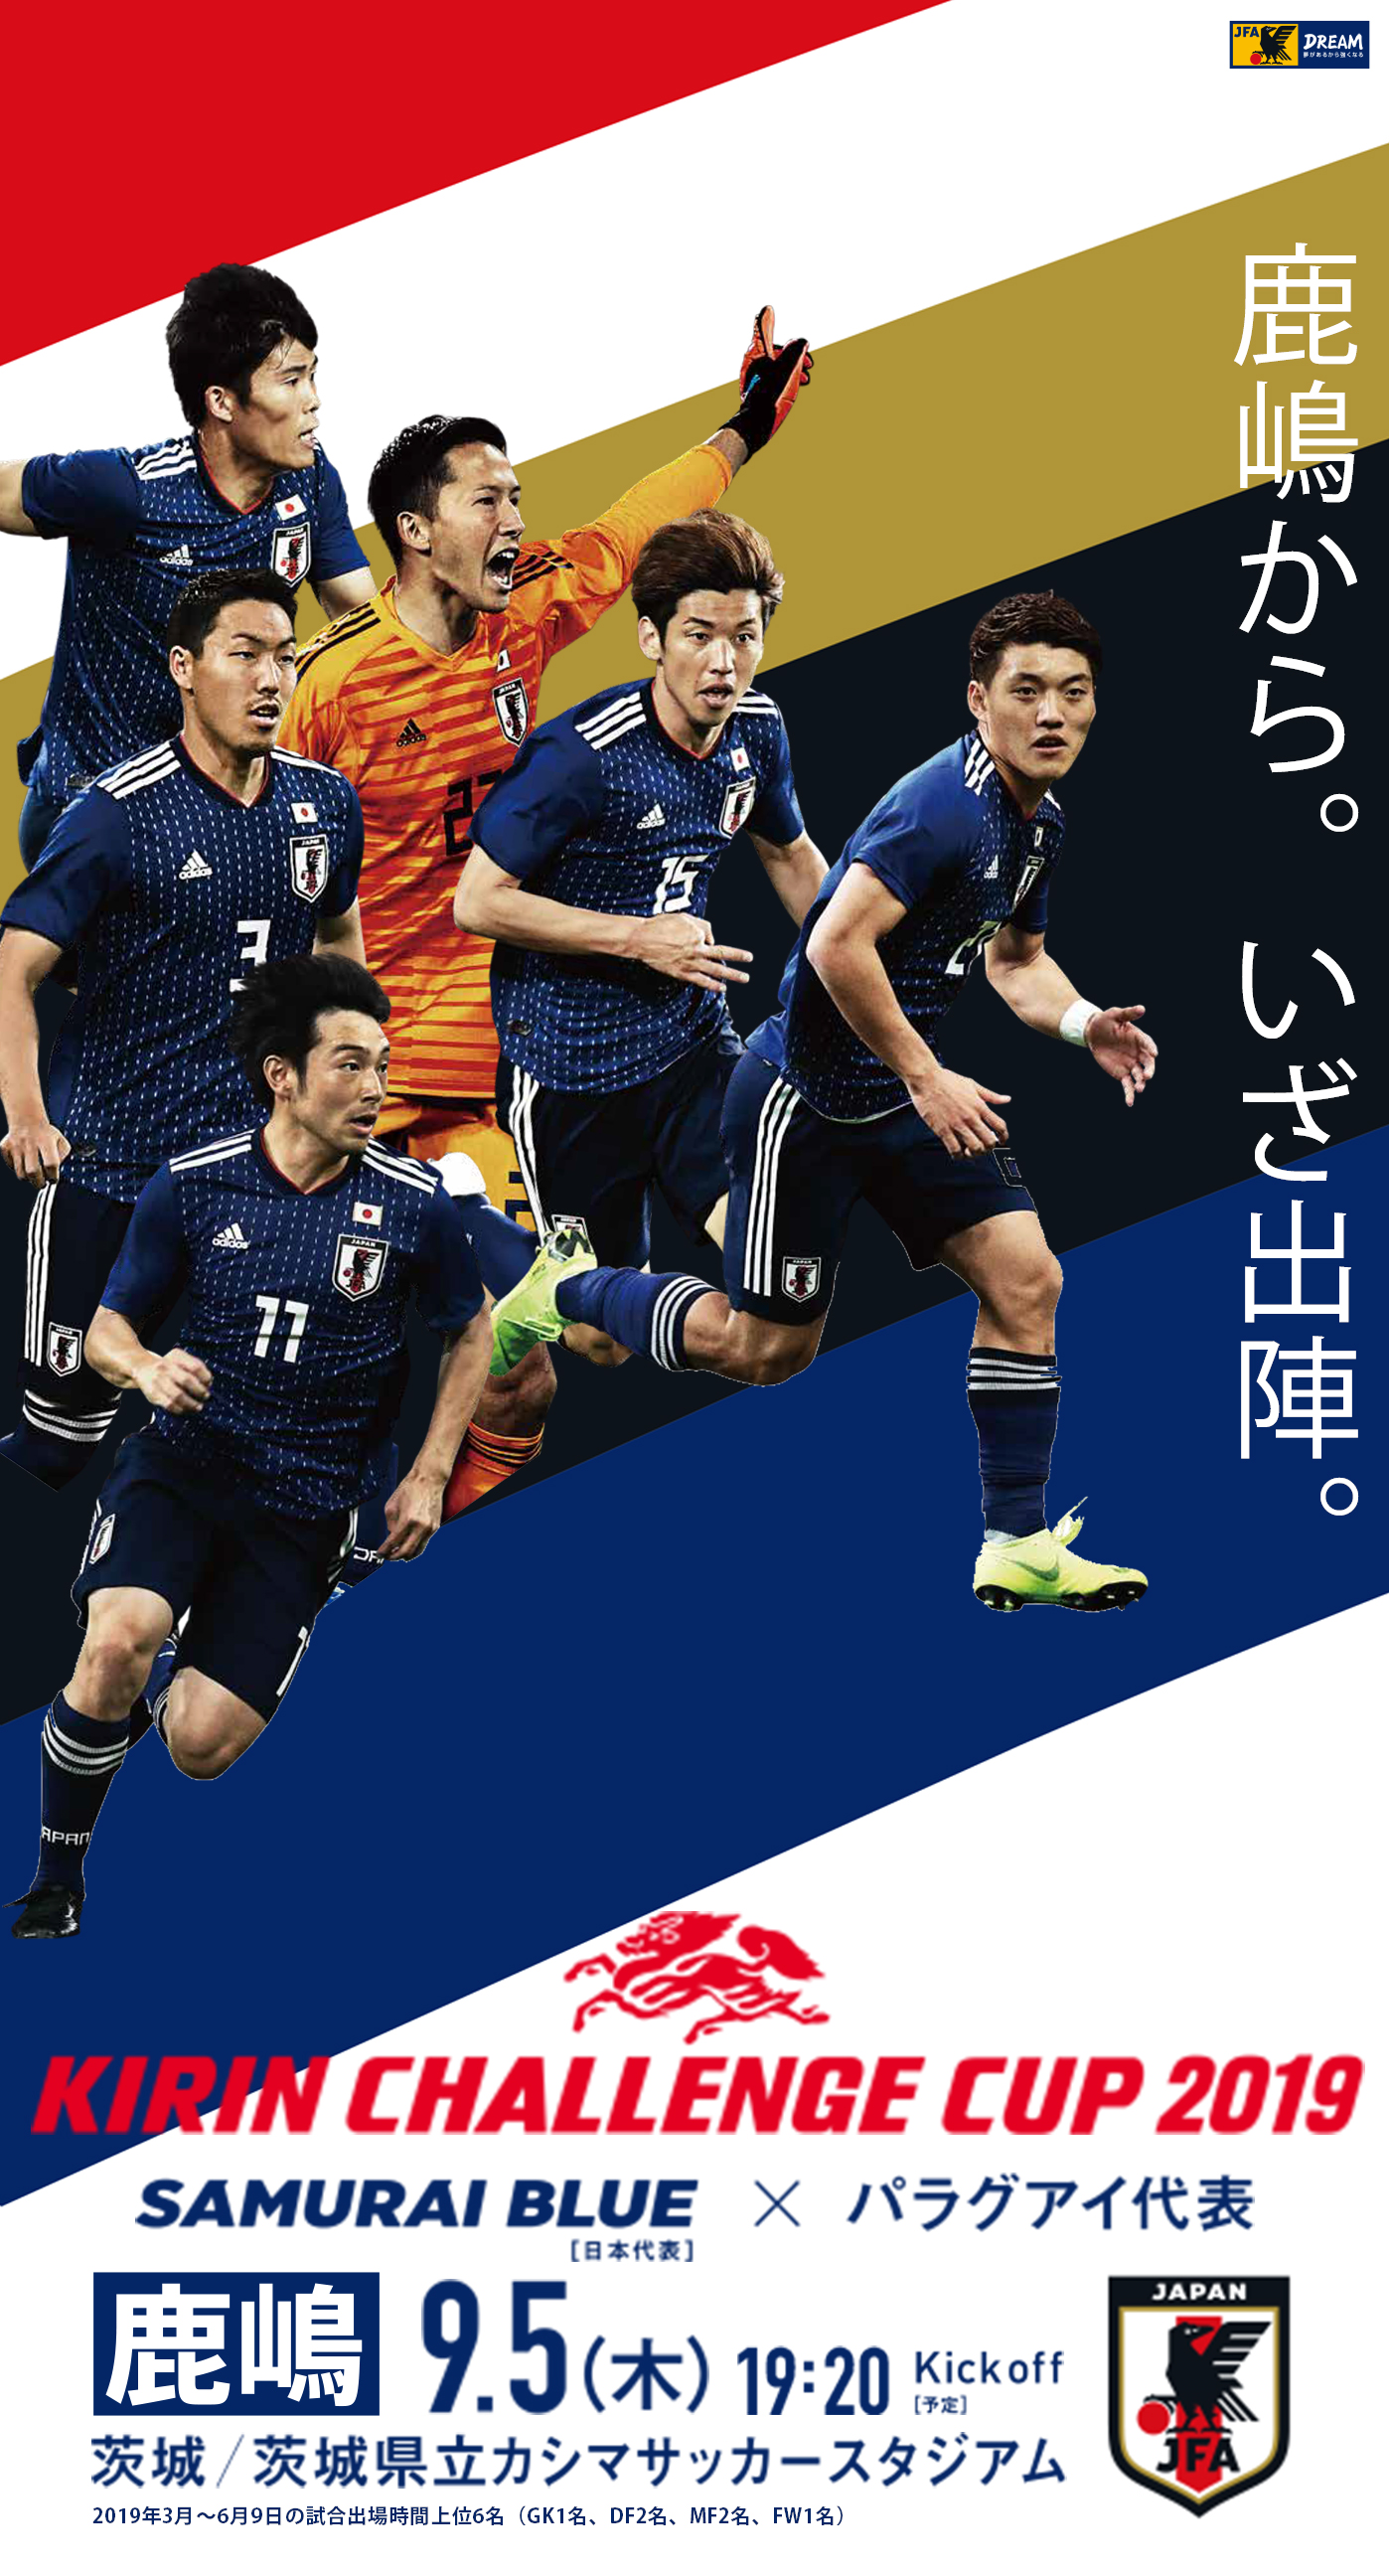 壁紙 ポスターダウンロード キリンチャレンジカップ2019 9 5 Top Samurai Blue 日本代表 Jfa 日本サッカー協会